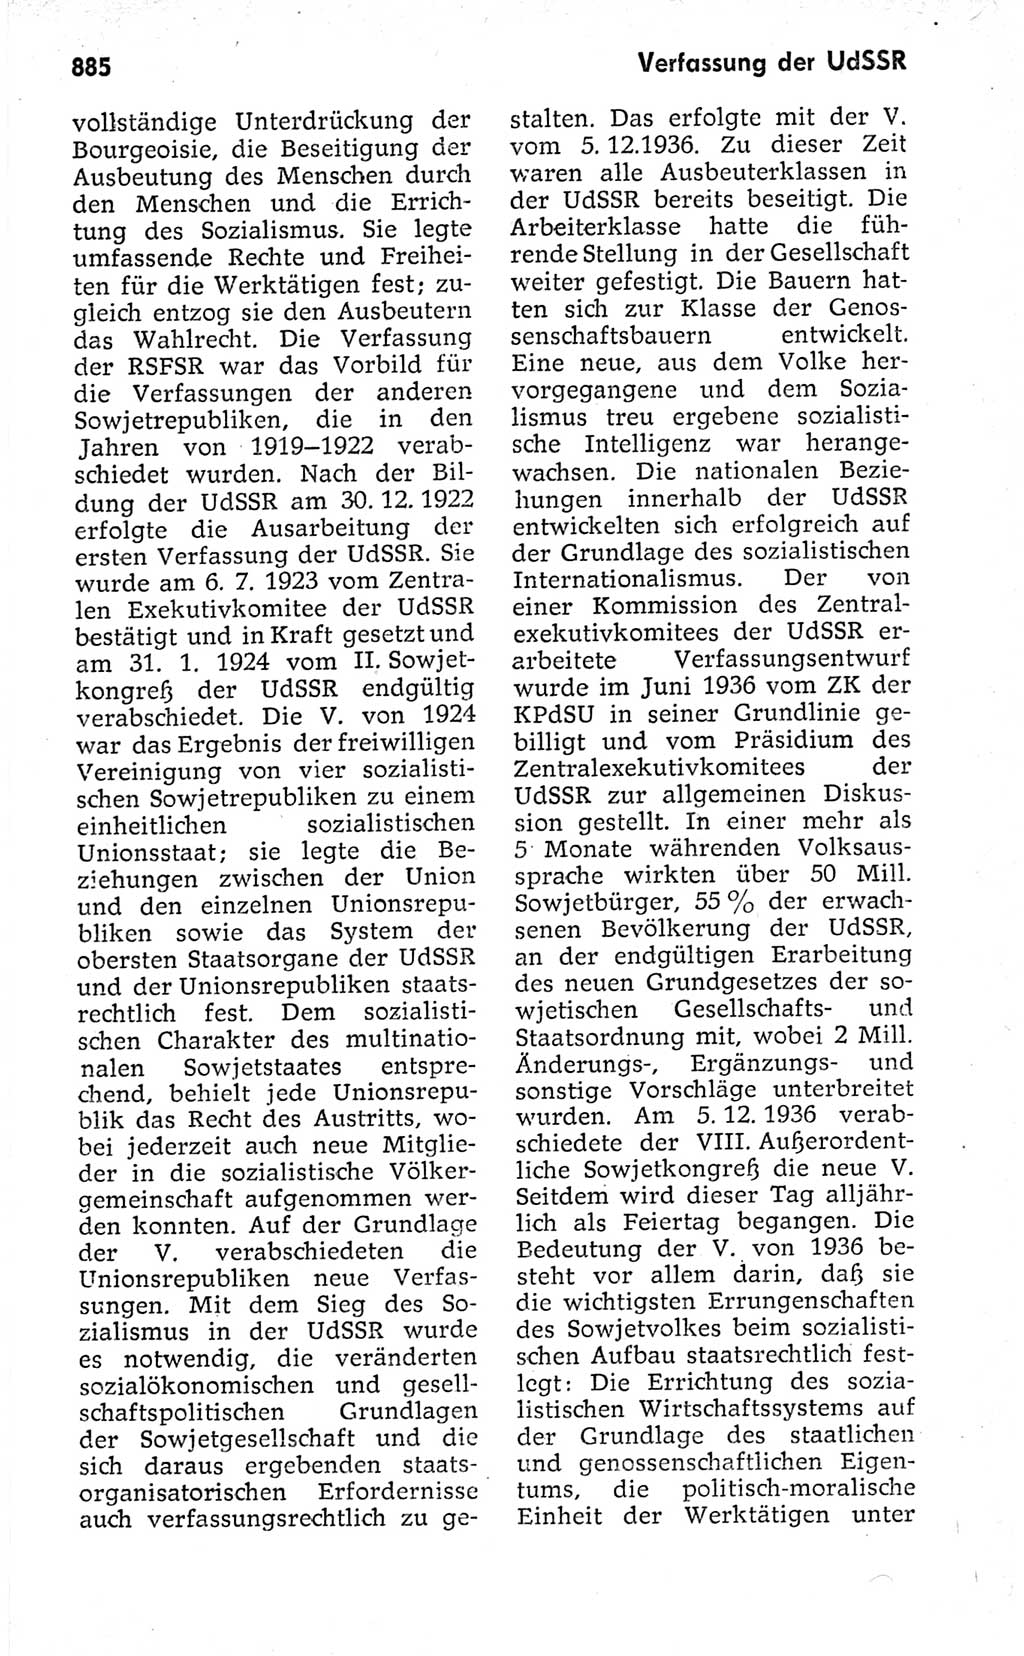 Kleines politisches Wörterbuch [Deutsche Demokratische Republik (DDR)] 1973, Seite 885 (Kl. pol. Wb. DDR 1973, S. 885)